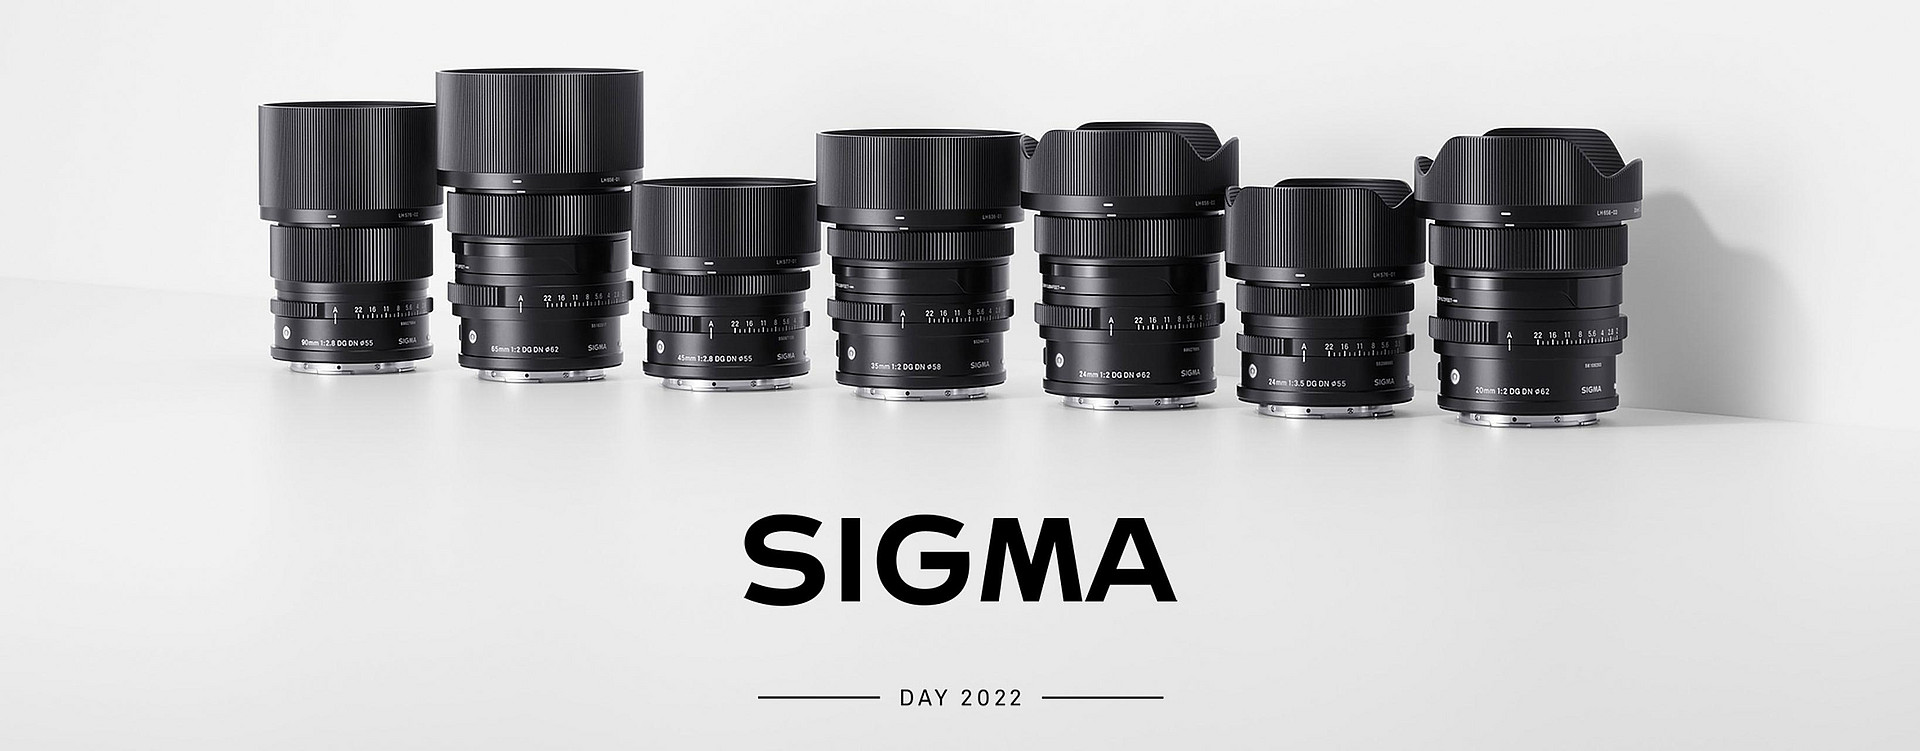 Line-up von SIGMA-Objektiven - Ankündigung des SIGMA DAY 2022